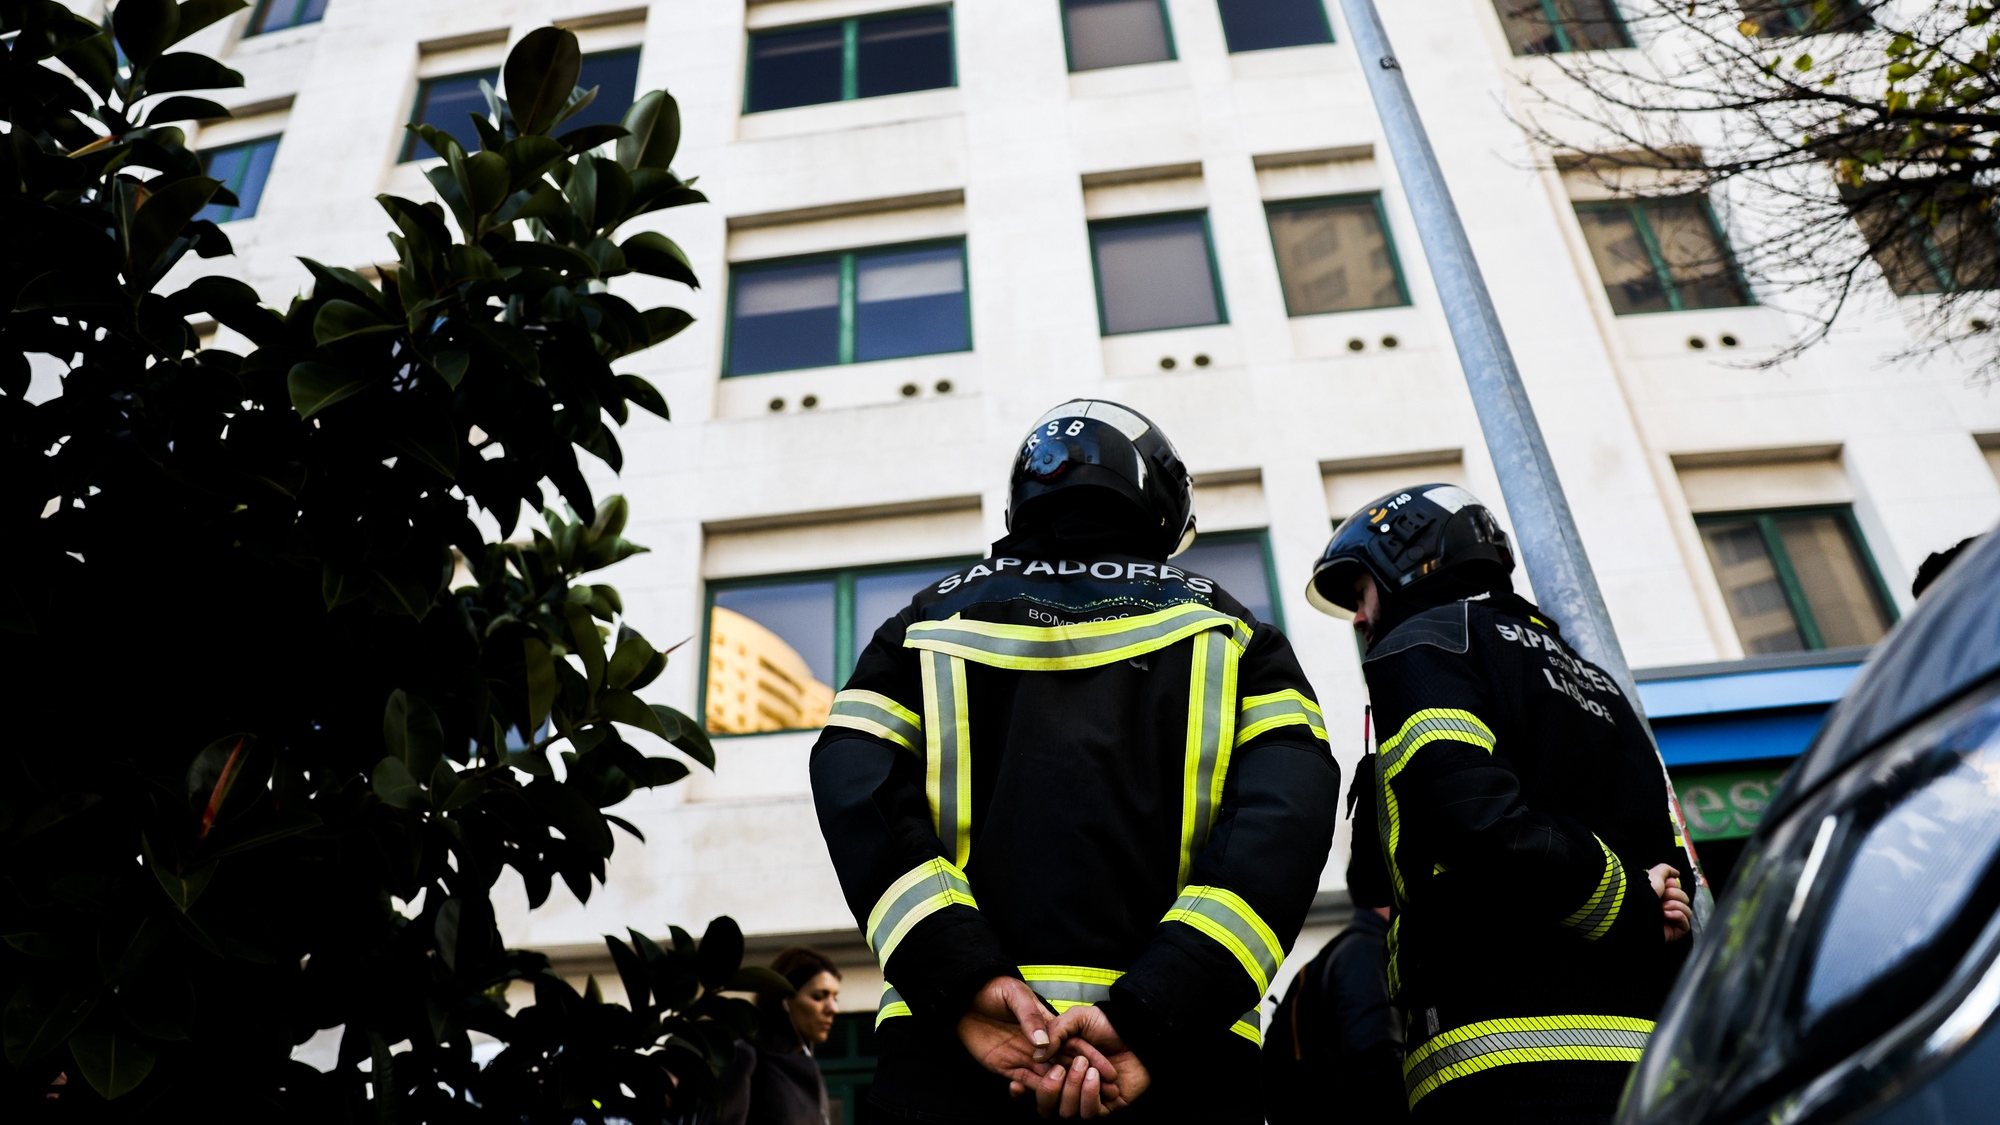 Um incêndio num prédio de 10 andares na Avenida Columbano Bordalo Pinheiro, em Lisboa, causou hoje 18 feridos, seis dos quais em estado grave, Lisboa, 05 de janeiro de 2023. No local estiveram 87 operacionais, entre elementos dos Sapadores de Bombeiros, Polícia Municipal, Bombeiros Voluntários de Lisboa, proteção civil, PSP e Instituto Nacional de Emergência Médica (INEM), com o apoio de 40 veículos.TIAGO PETINGA/LUSA